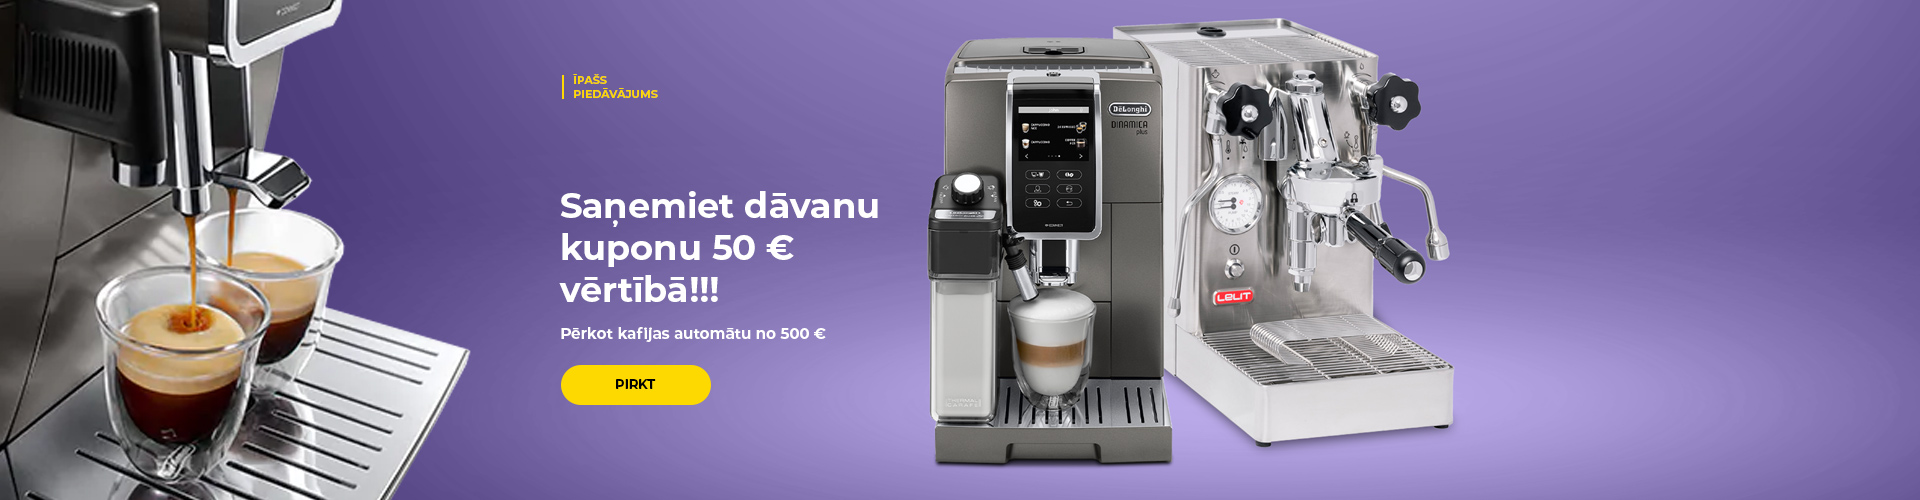 "Saņemiet dāvanu kuponu 50 € vērtībā!!! Pērkot kafijas automātu no 500 €."